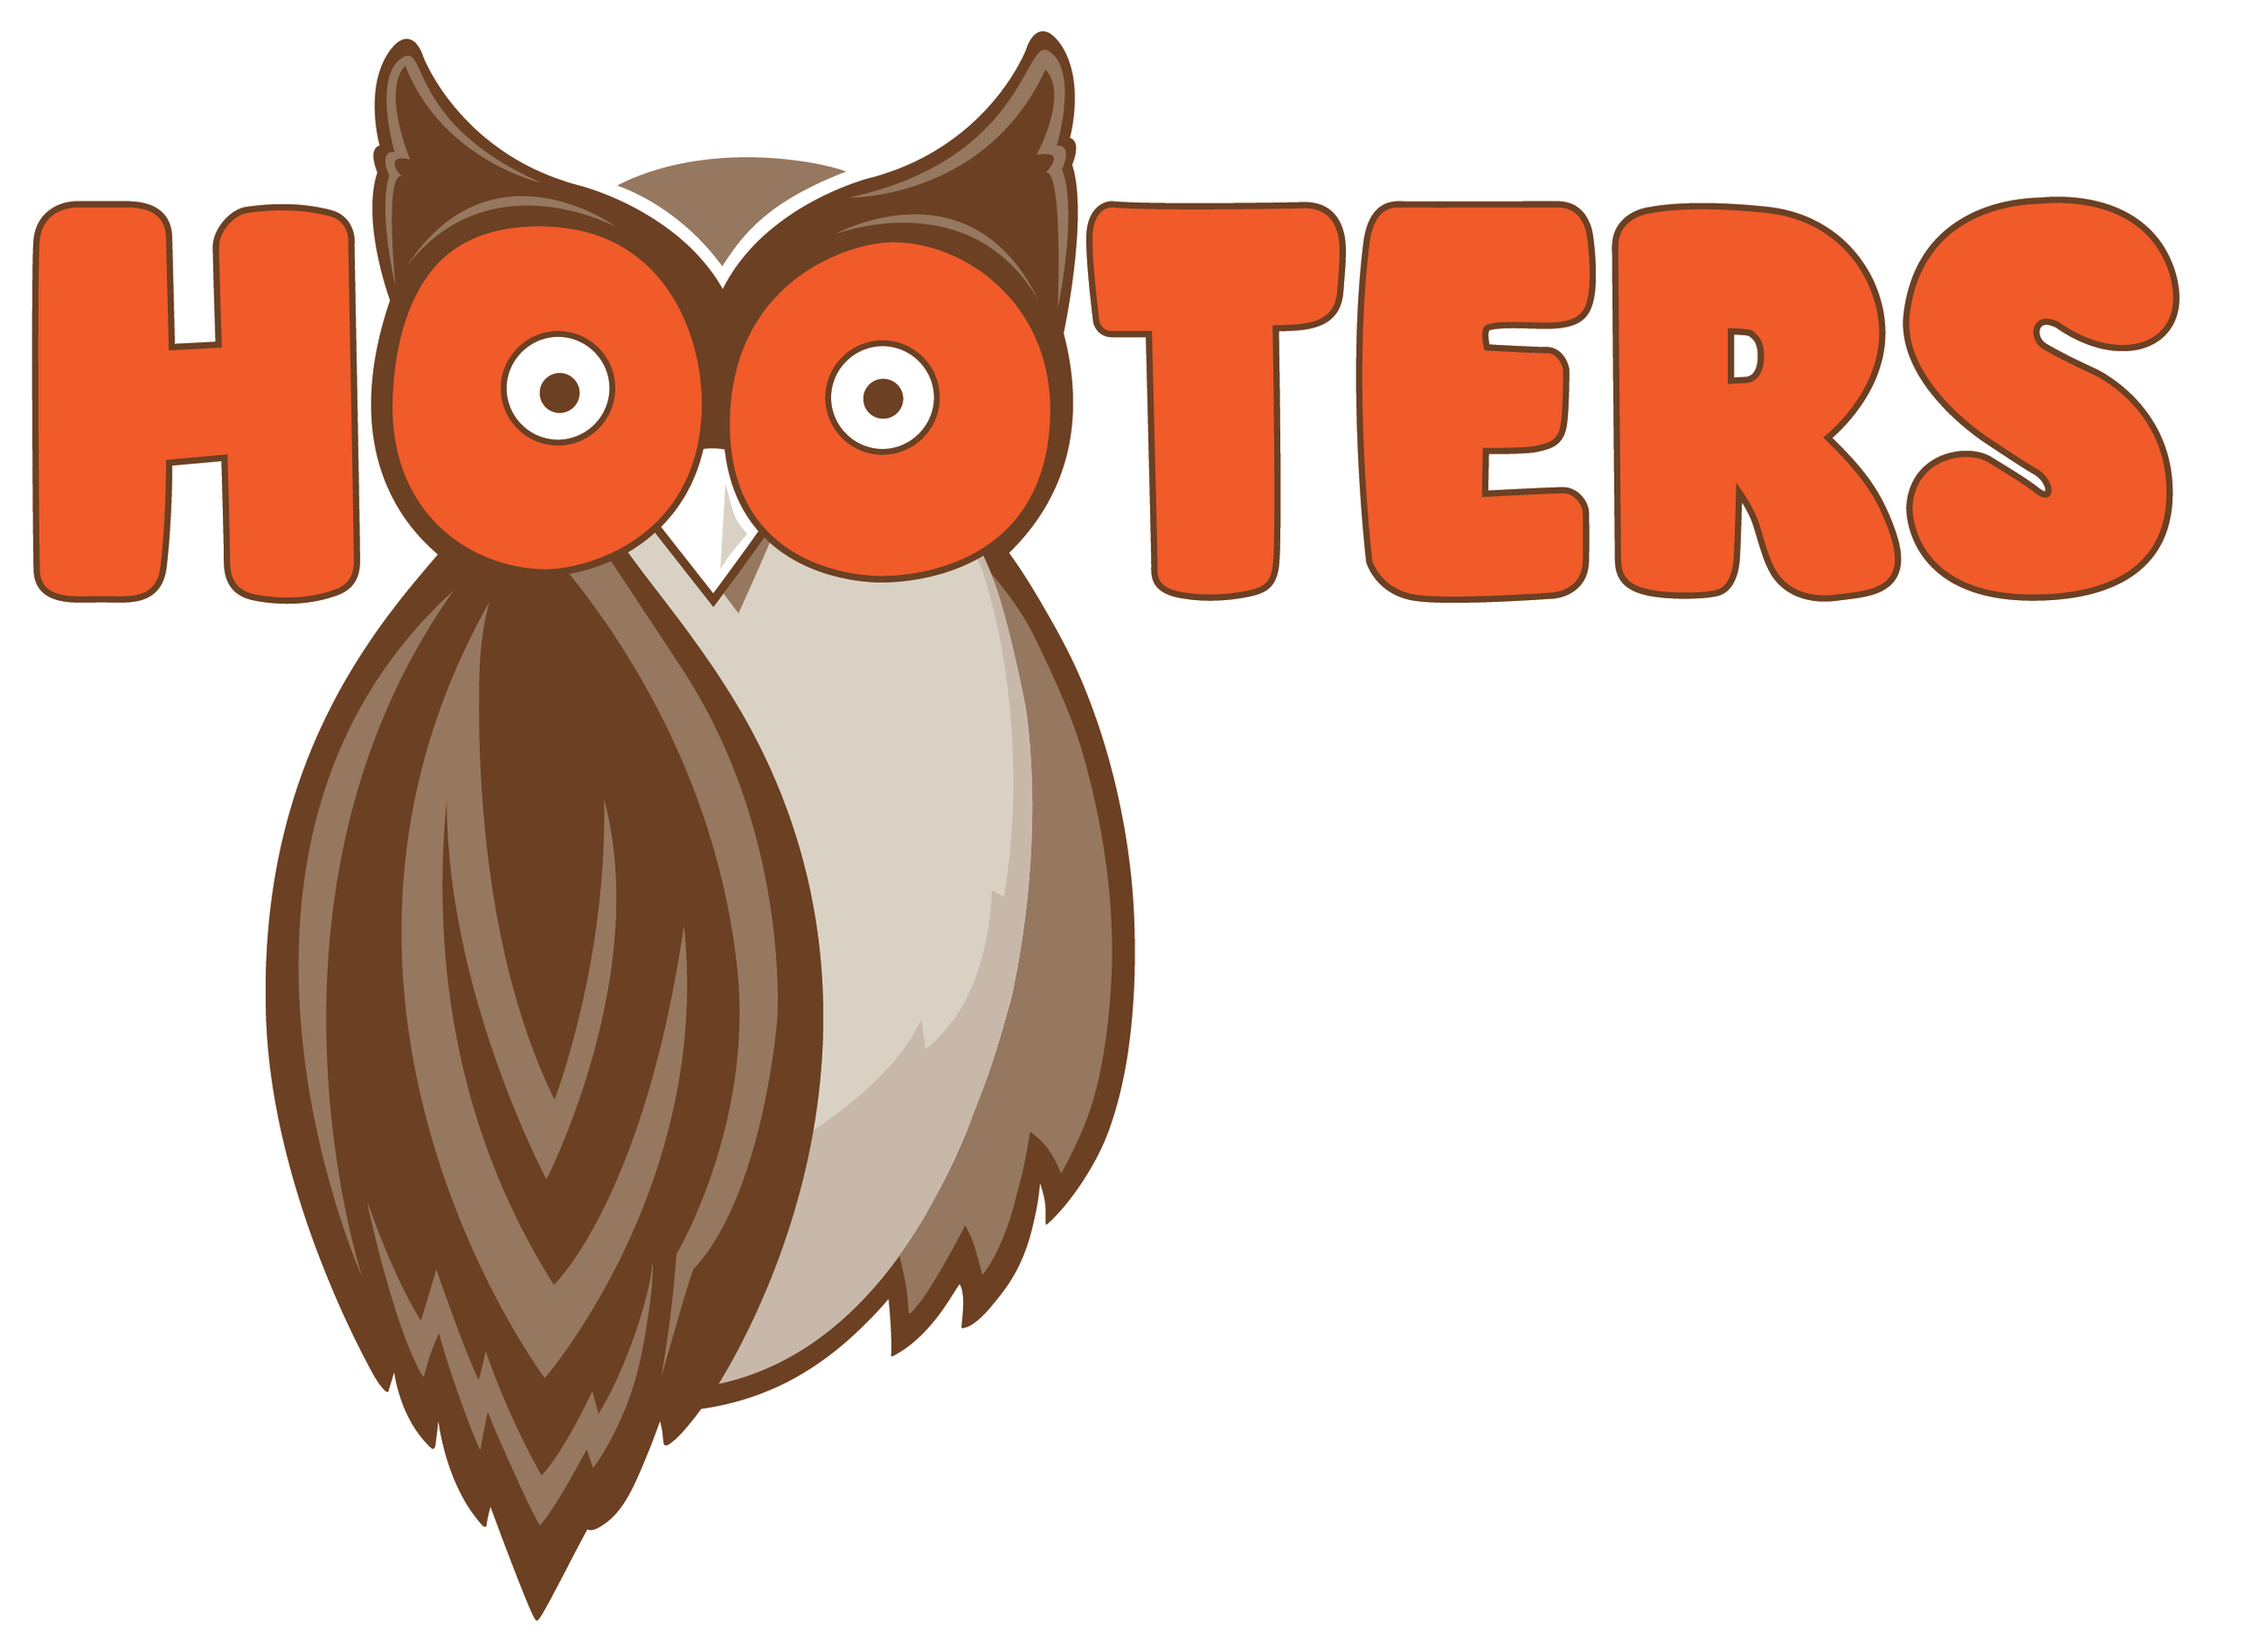 hooters-logo-lockup-2.png